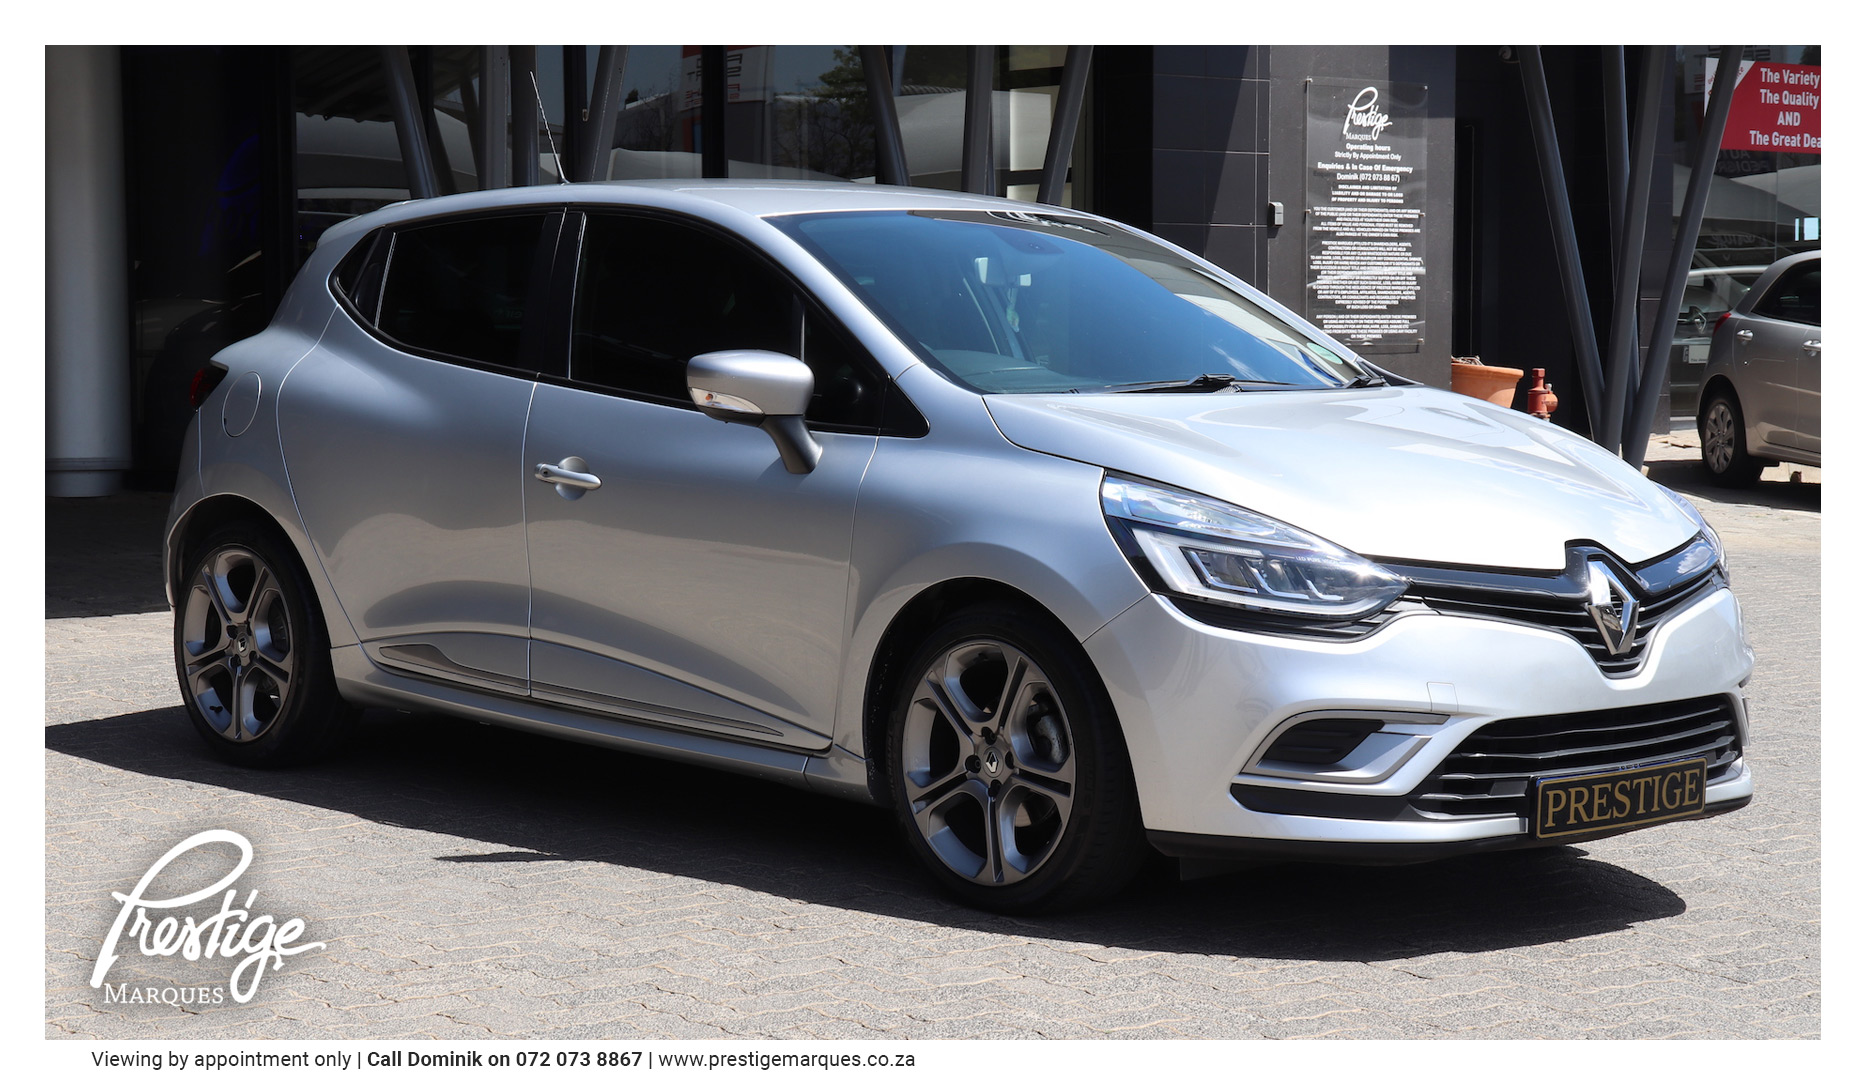 https://prestigemarques.co.za/wp-content/uploads/2018/12/Prestige-Marques-Renault-Clio-1.jpg